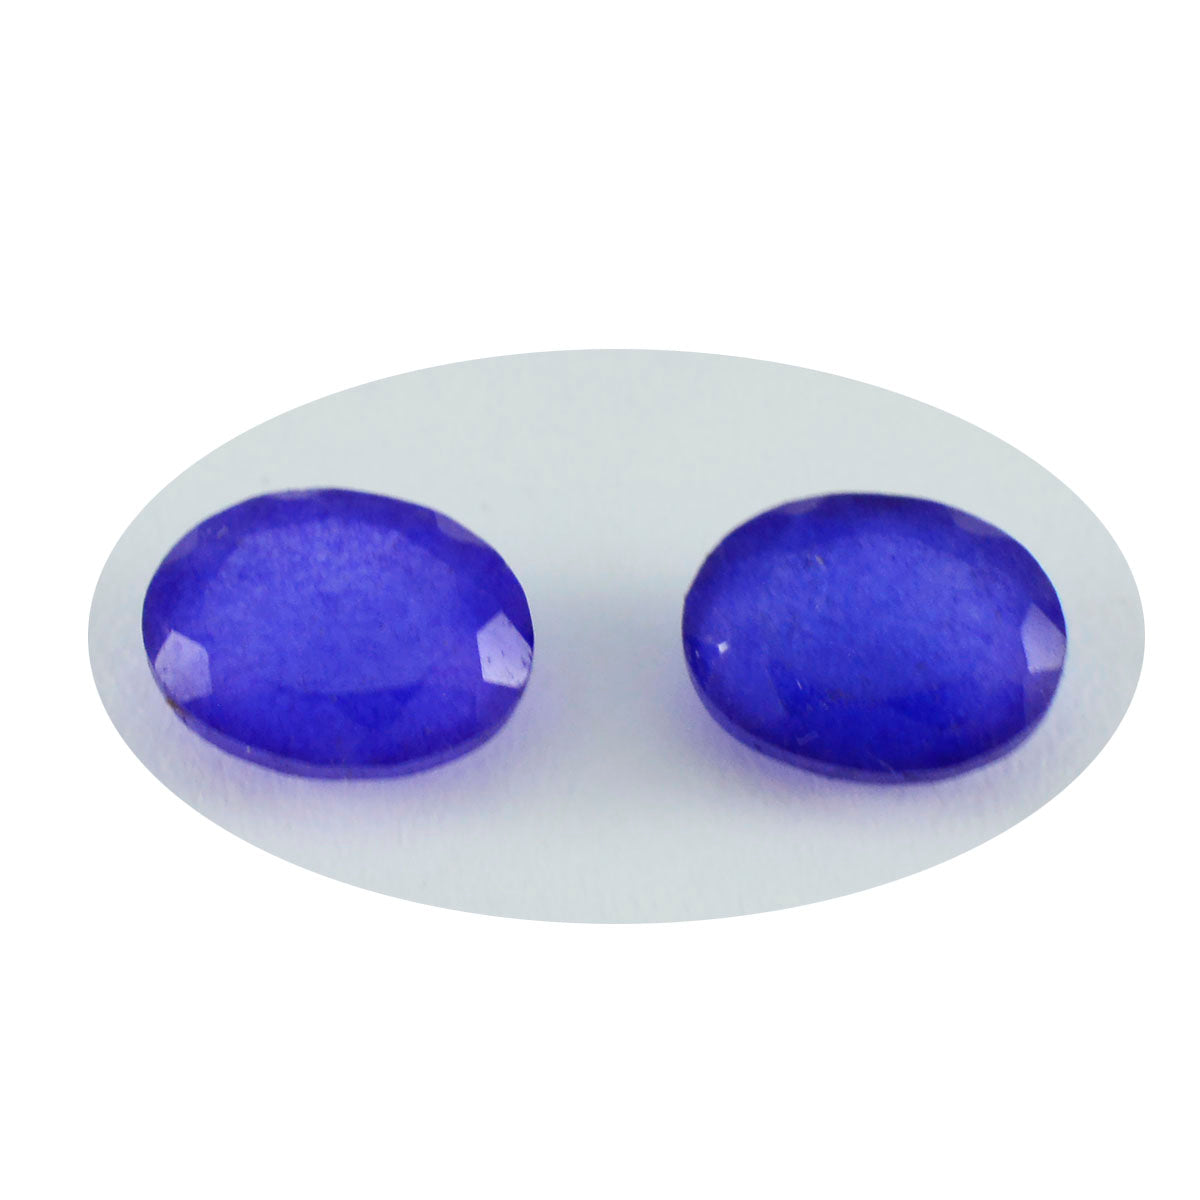 riyogems 1st naturlig blå jaspis fasetterad 6x8 mm oval form vacker kvalitetspärla